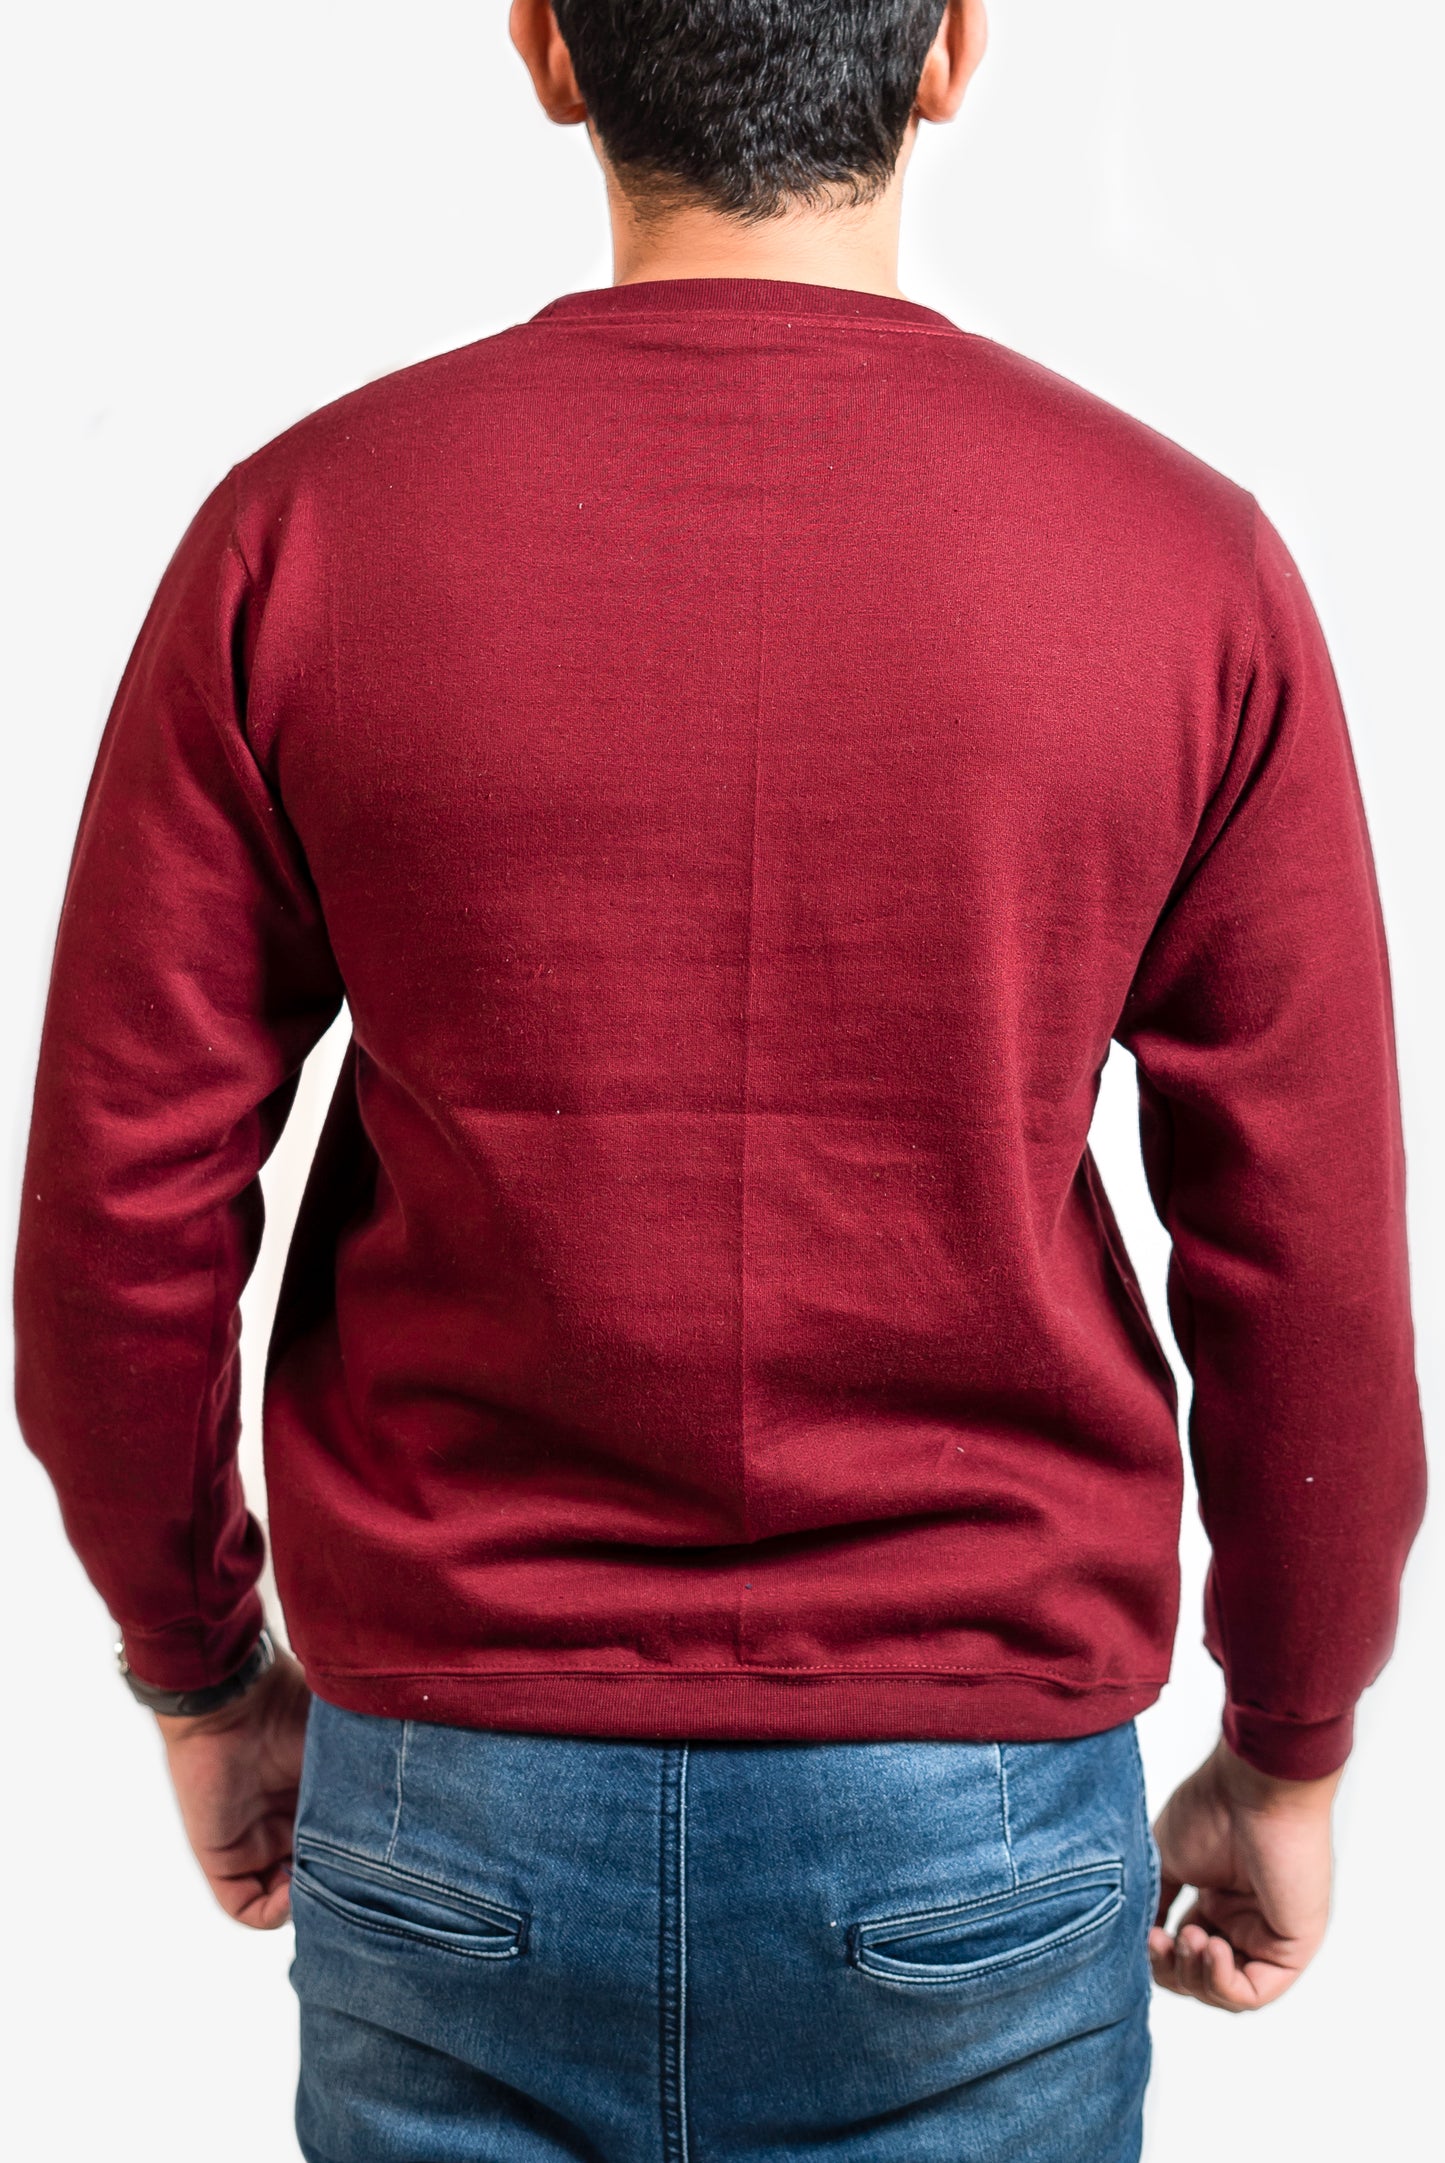 Basic Burgundy Sweatshirt // Men - teehoodie.co